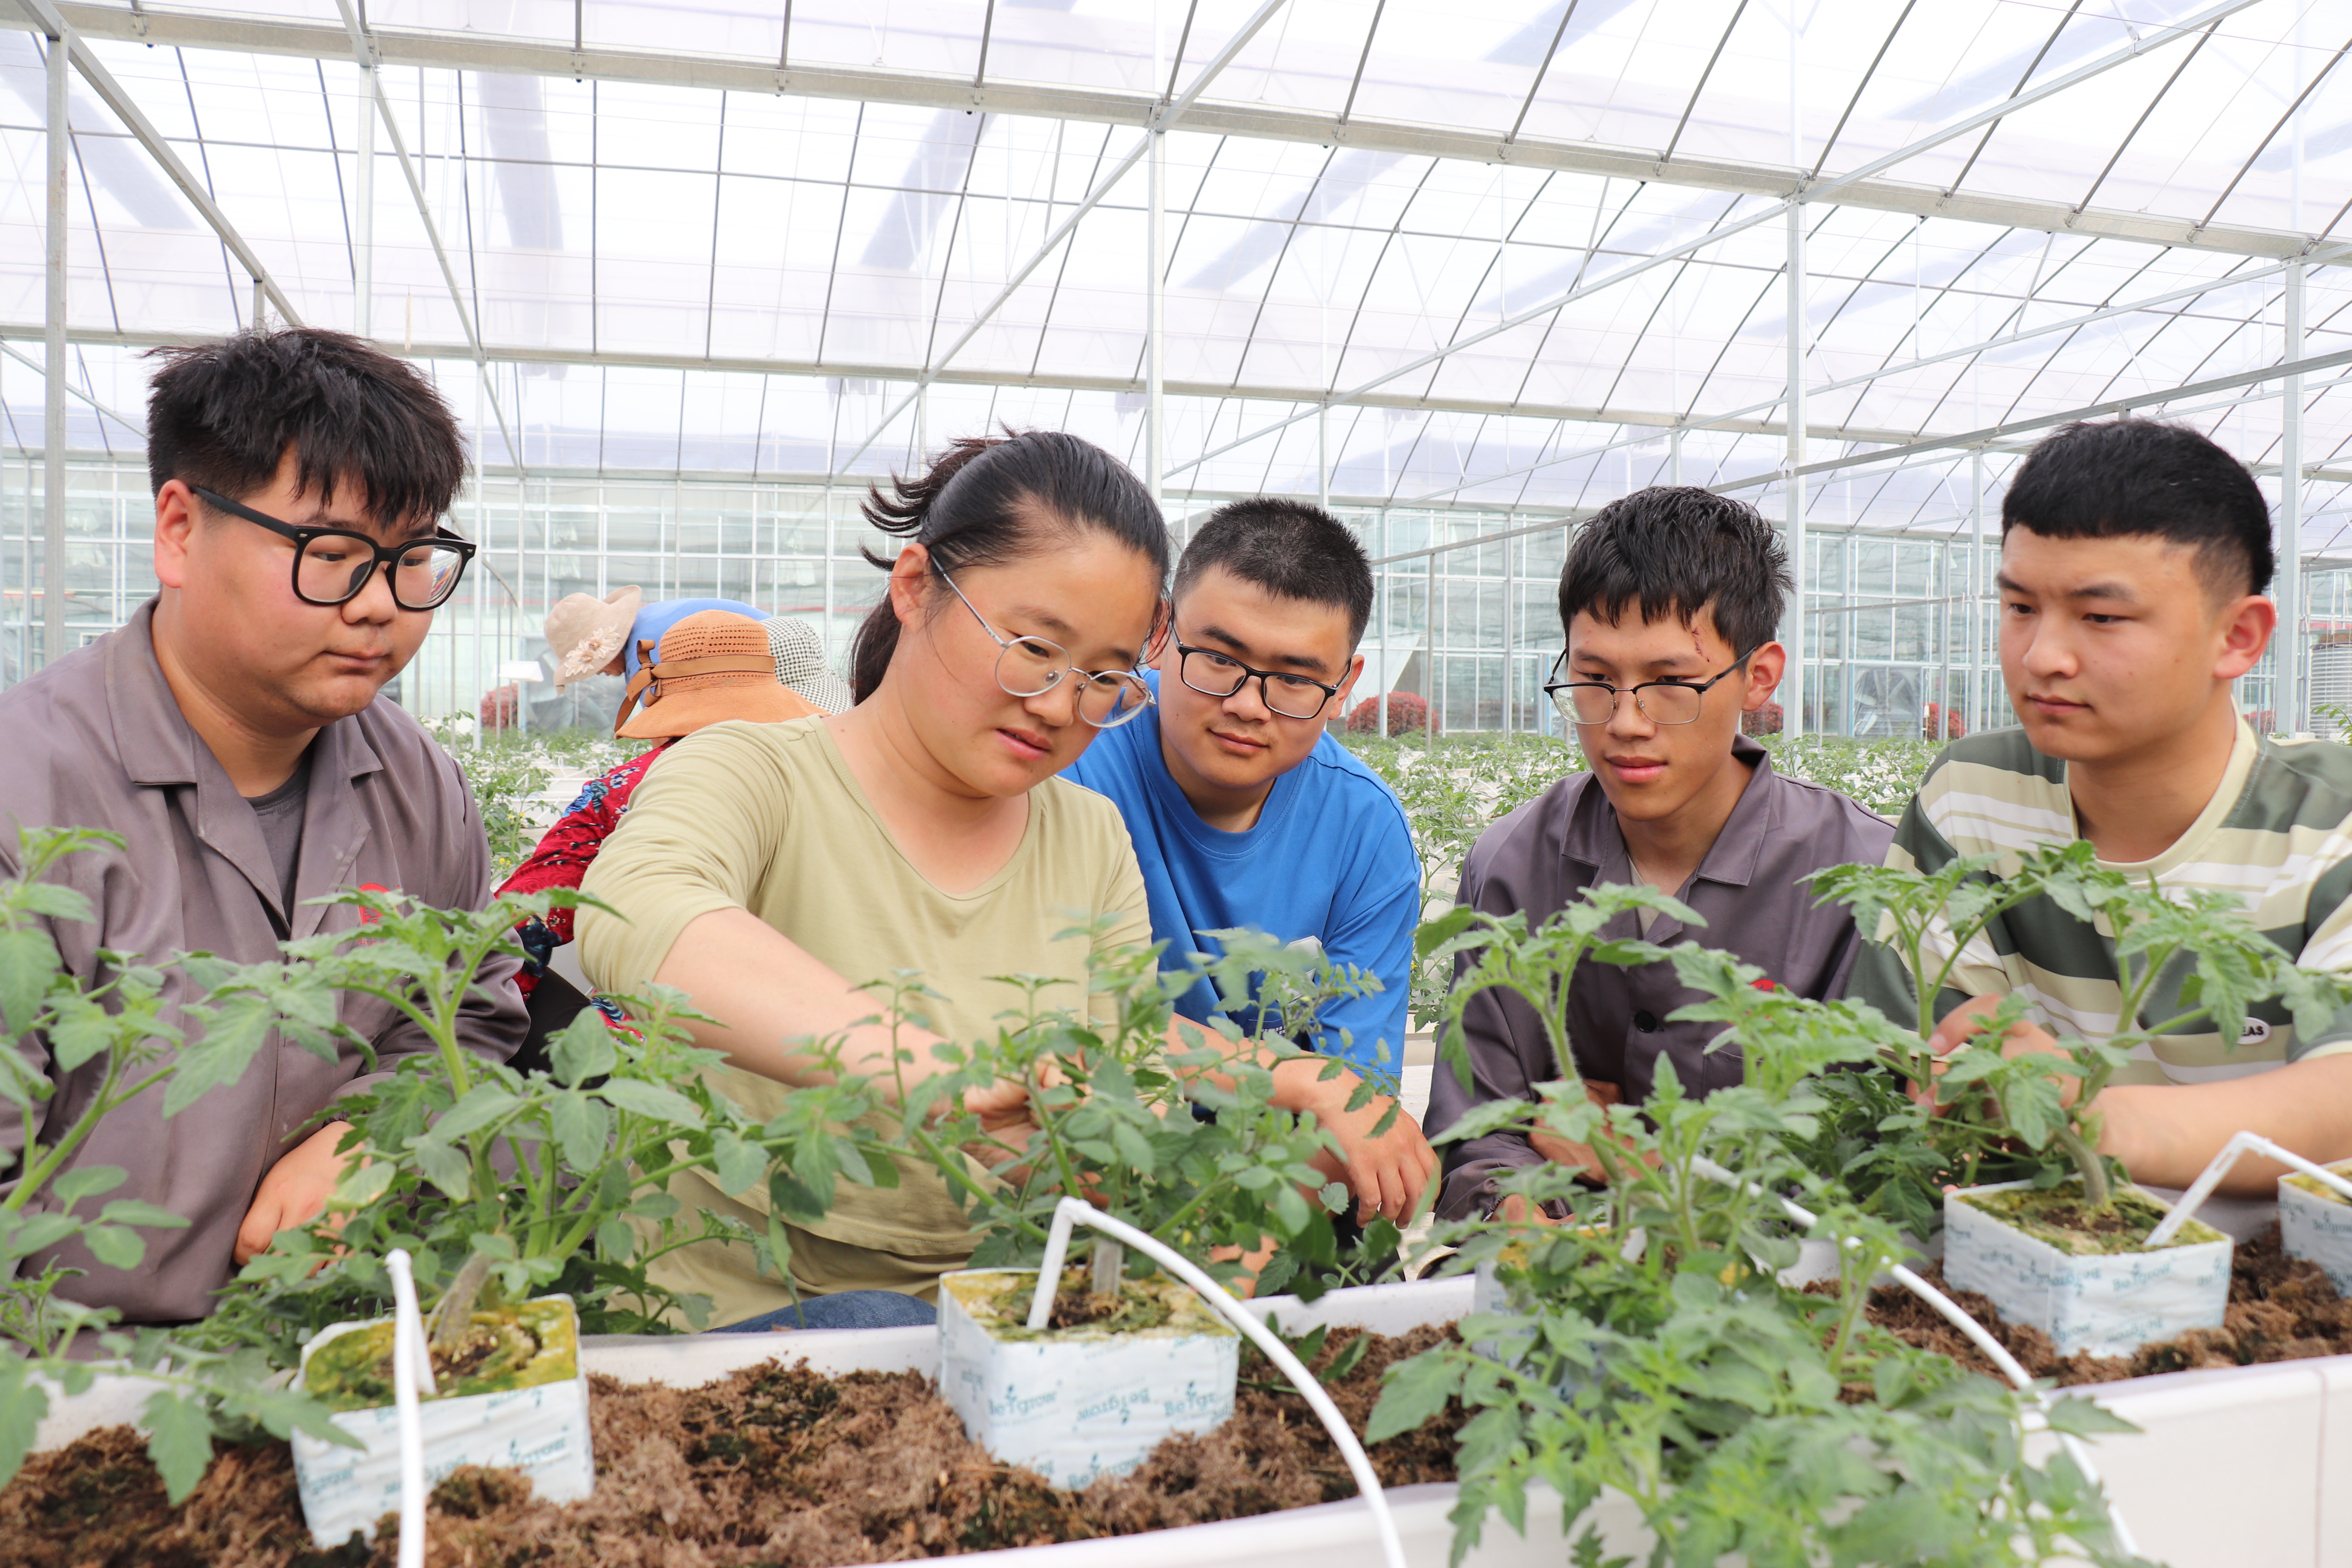 近日,来自山东省寿光县的采购商在河南农业大学扶沟蔬菜研究院与周口